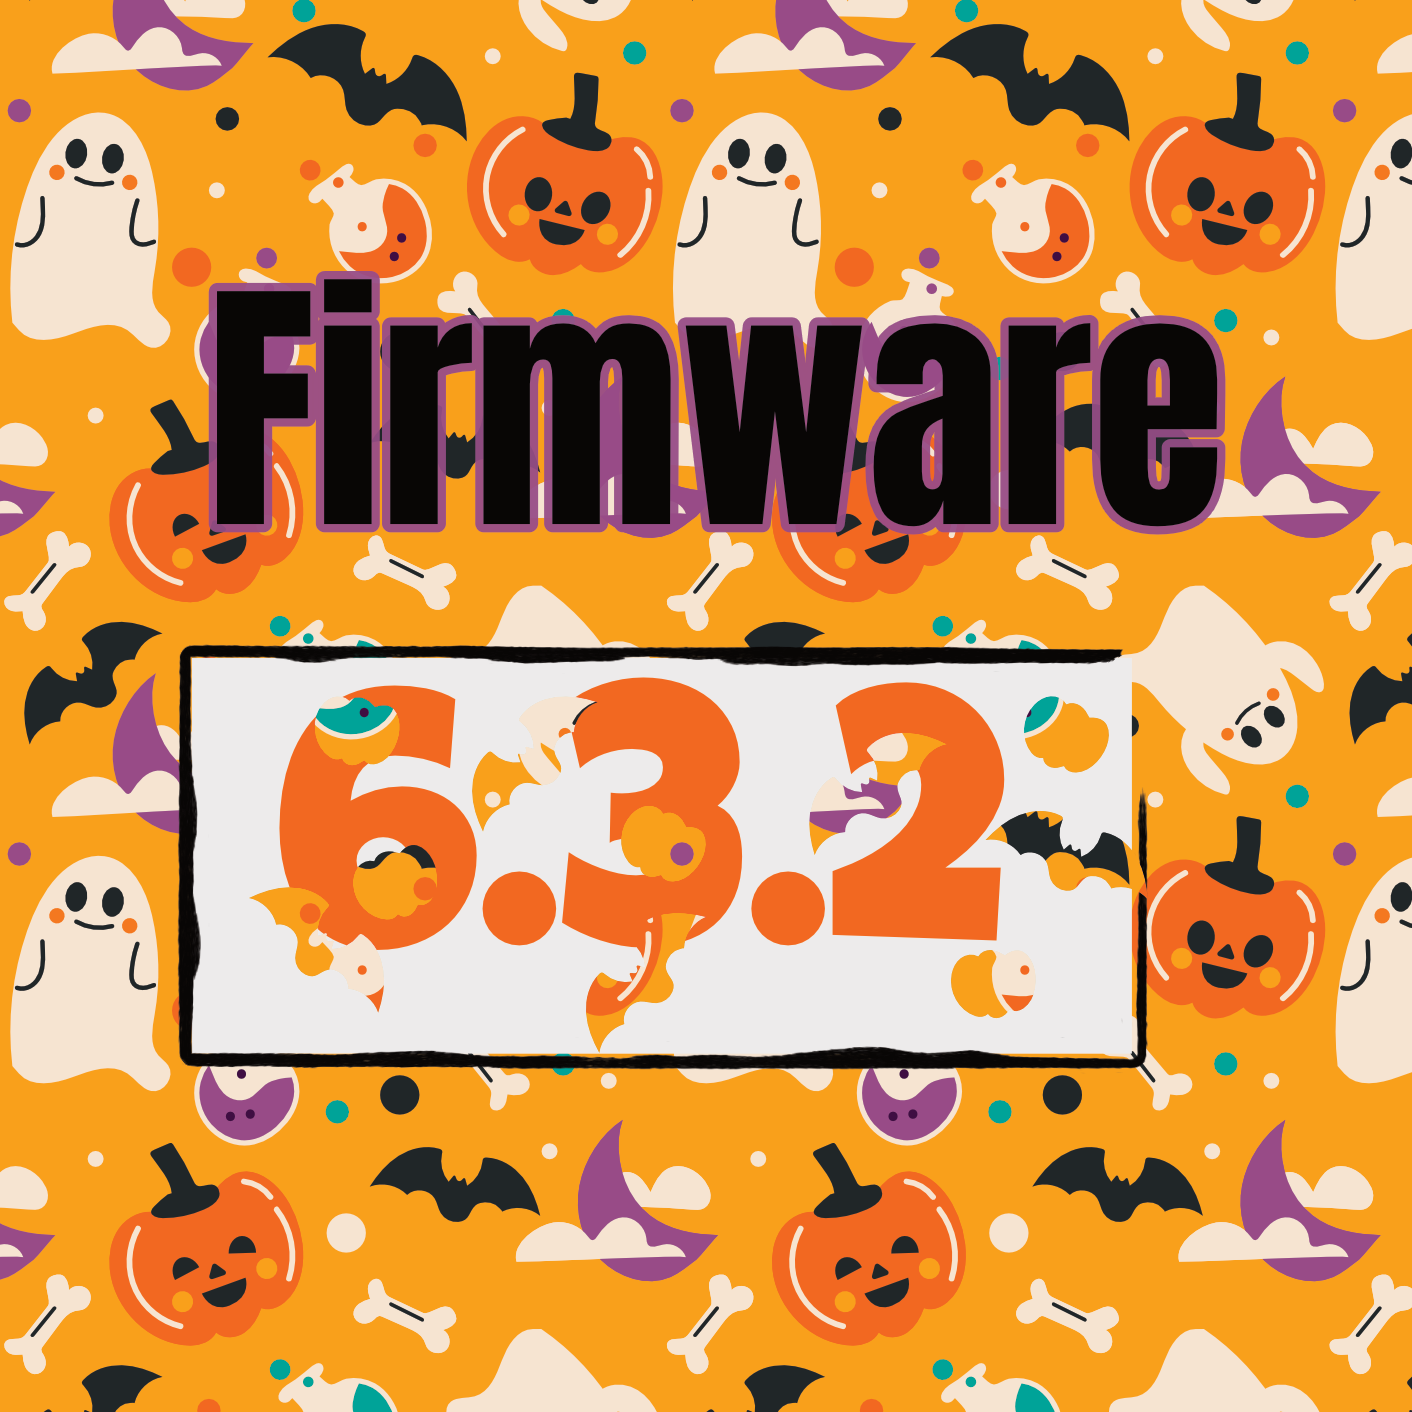 Advantech Firmware 6.3.2